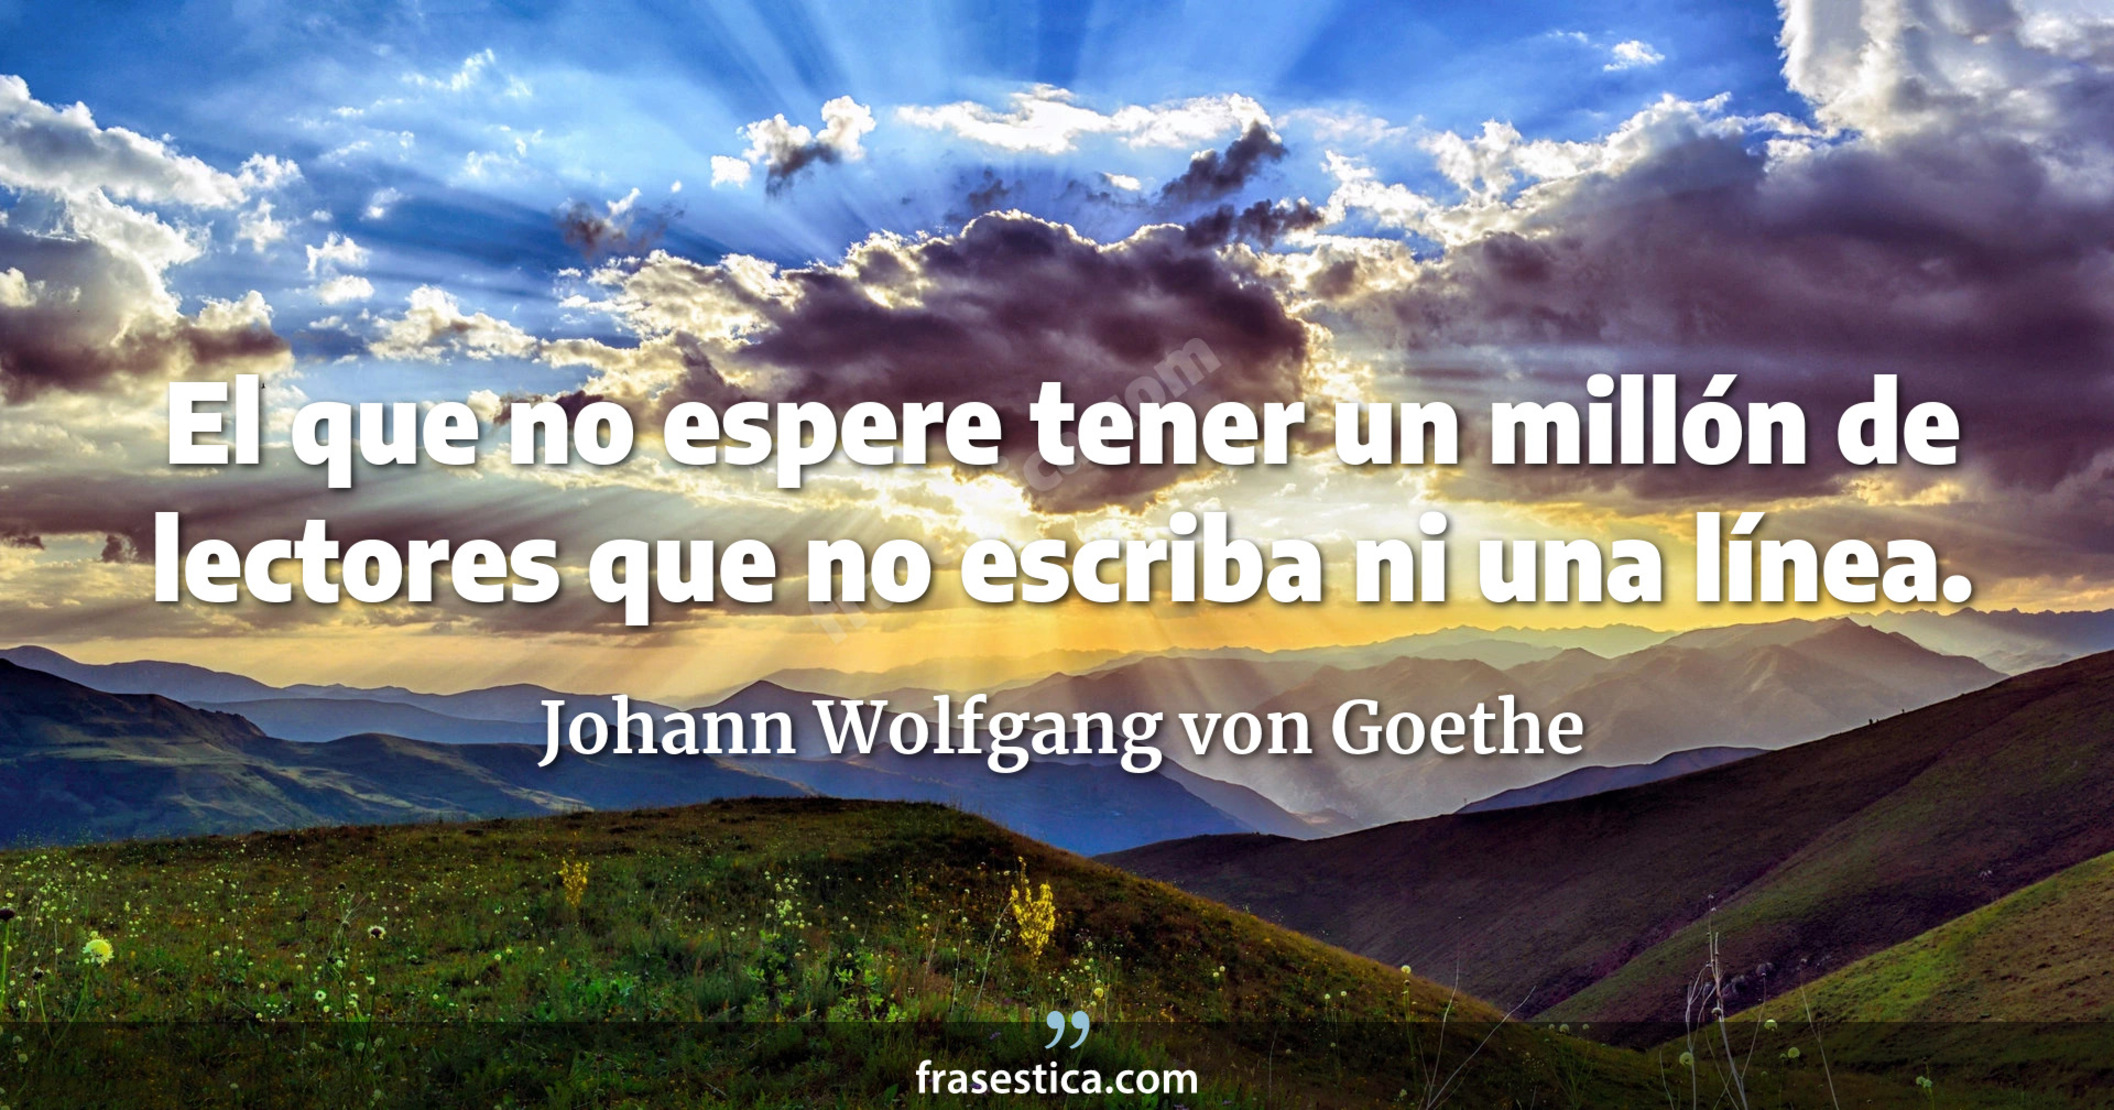 El que no espere tener un millón de lectores que no escriba ni una línea. - Johann Wolfgang von Goethe